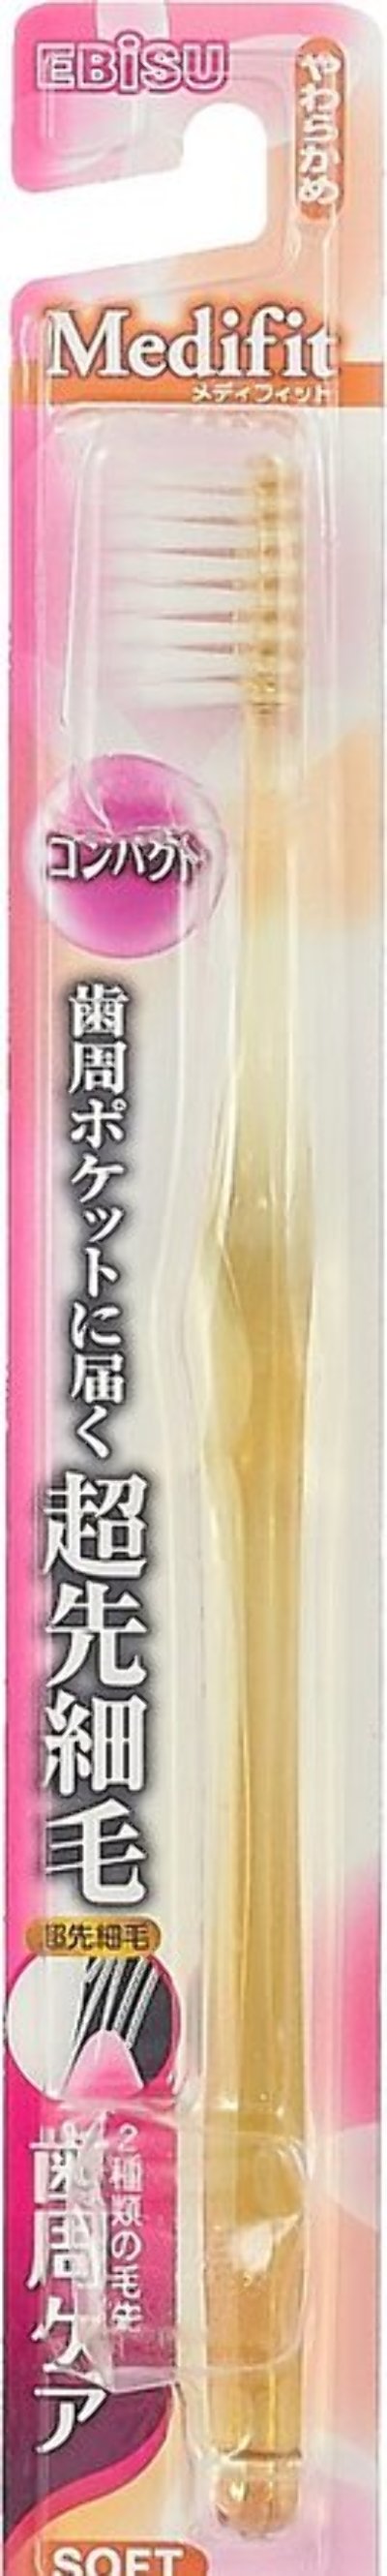 Зубная щетка Ebisu с компактной чистящей головкой и утонченными кончиками ворса, мягкая